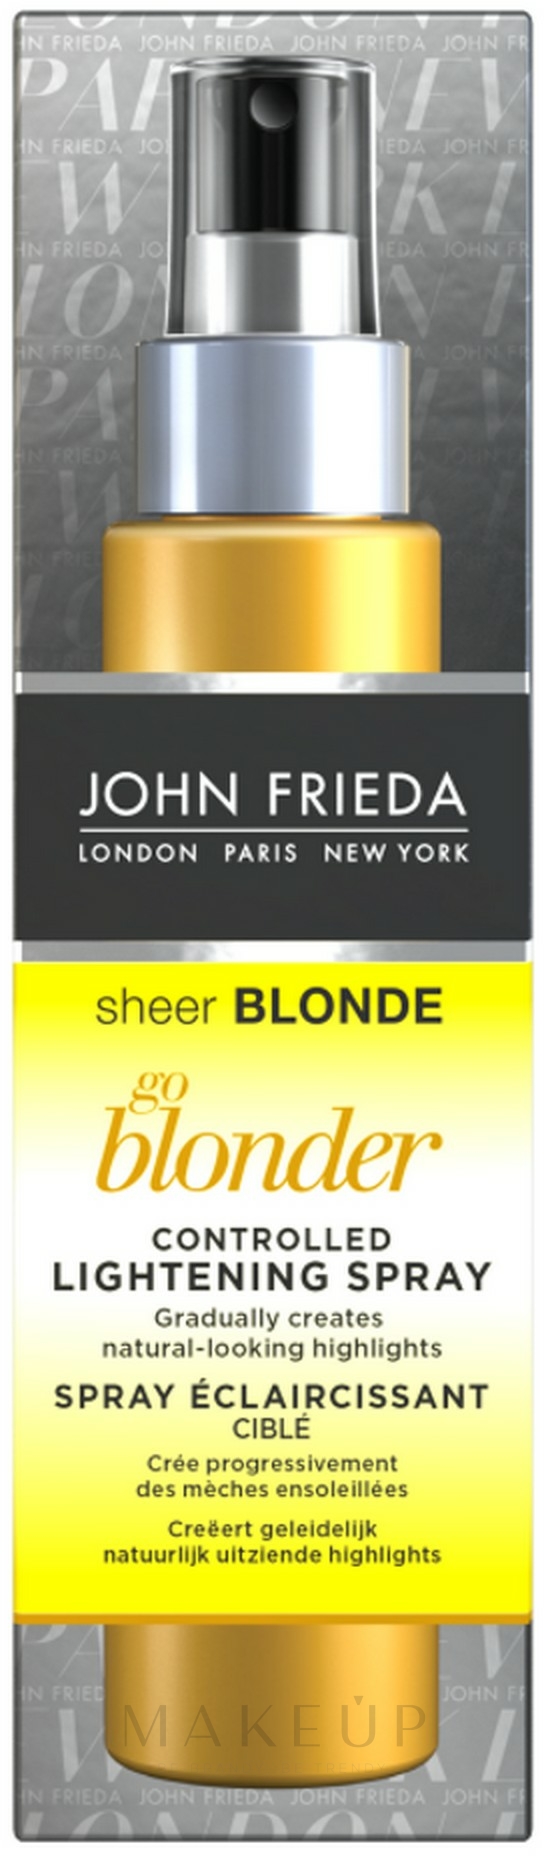 Haaraufhellungsspray mit Kamille und Zitrusfrüchten - John Frieda Sheer Blonde Go Blonder Controlled Lightening Spray  — Foto 100 ml